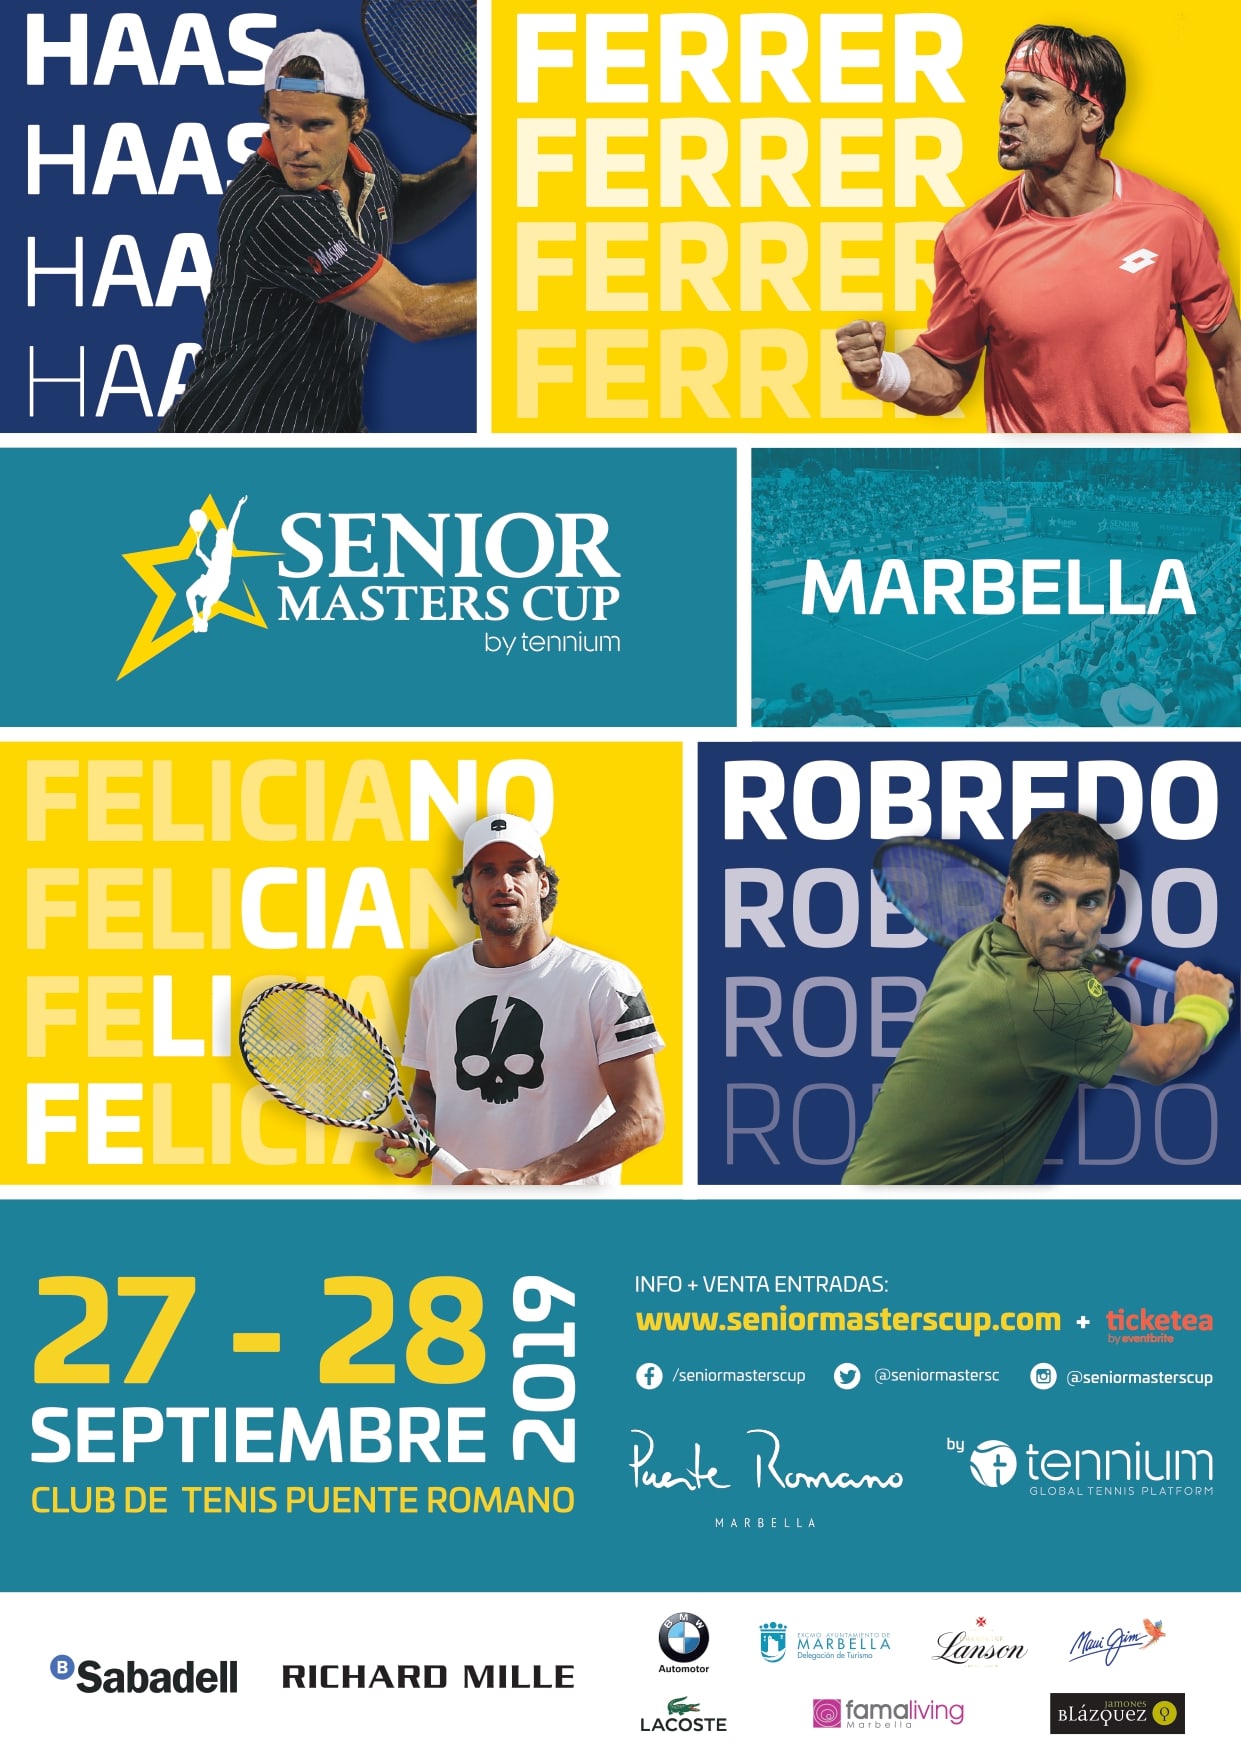 Cartel - Marbella acogerá el 27 y 28 de septiembre la cuarta edición de la Senior Masters Cup con la participación de David Ferrer, Feliciano López, Tommy Robredo y Tommy Haas